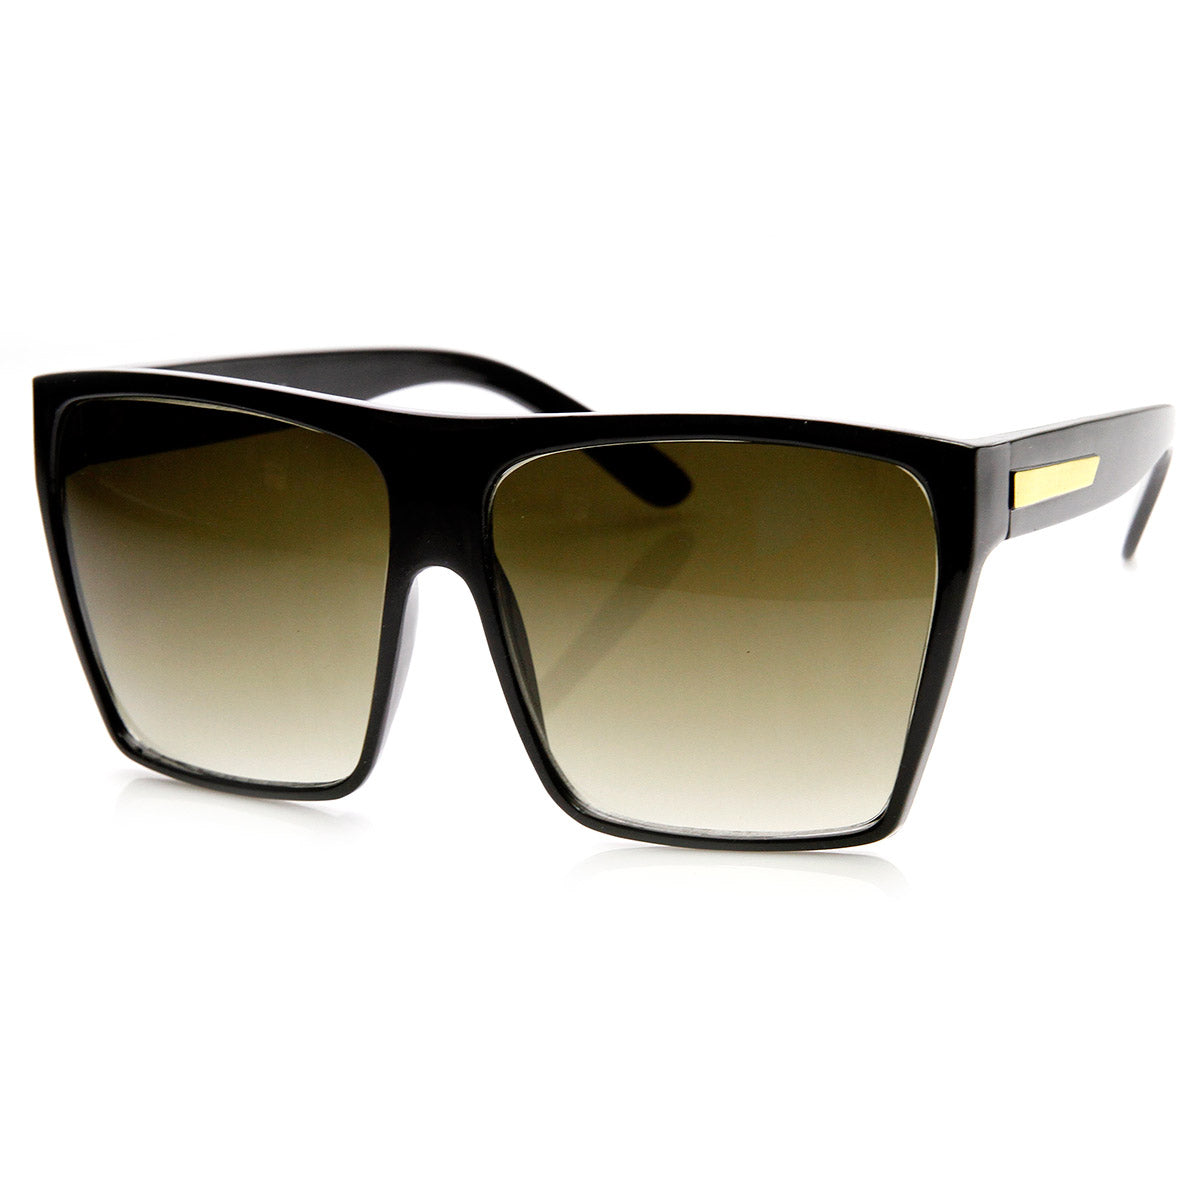 Vintage Large Square Frame Sunglasses Trendy Double Bridges Flat